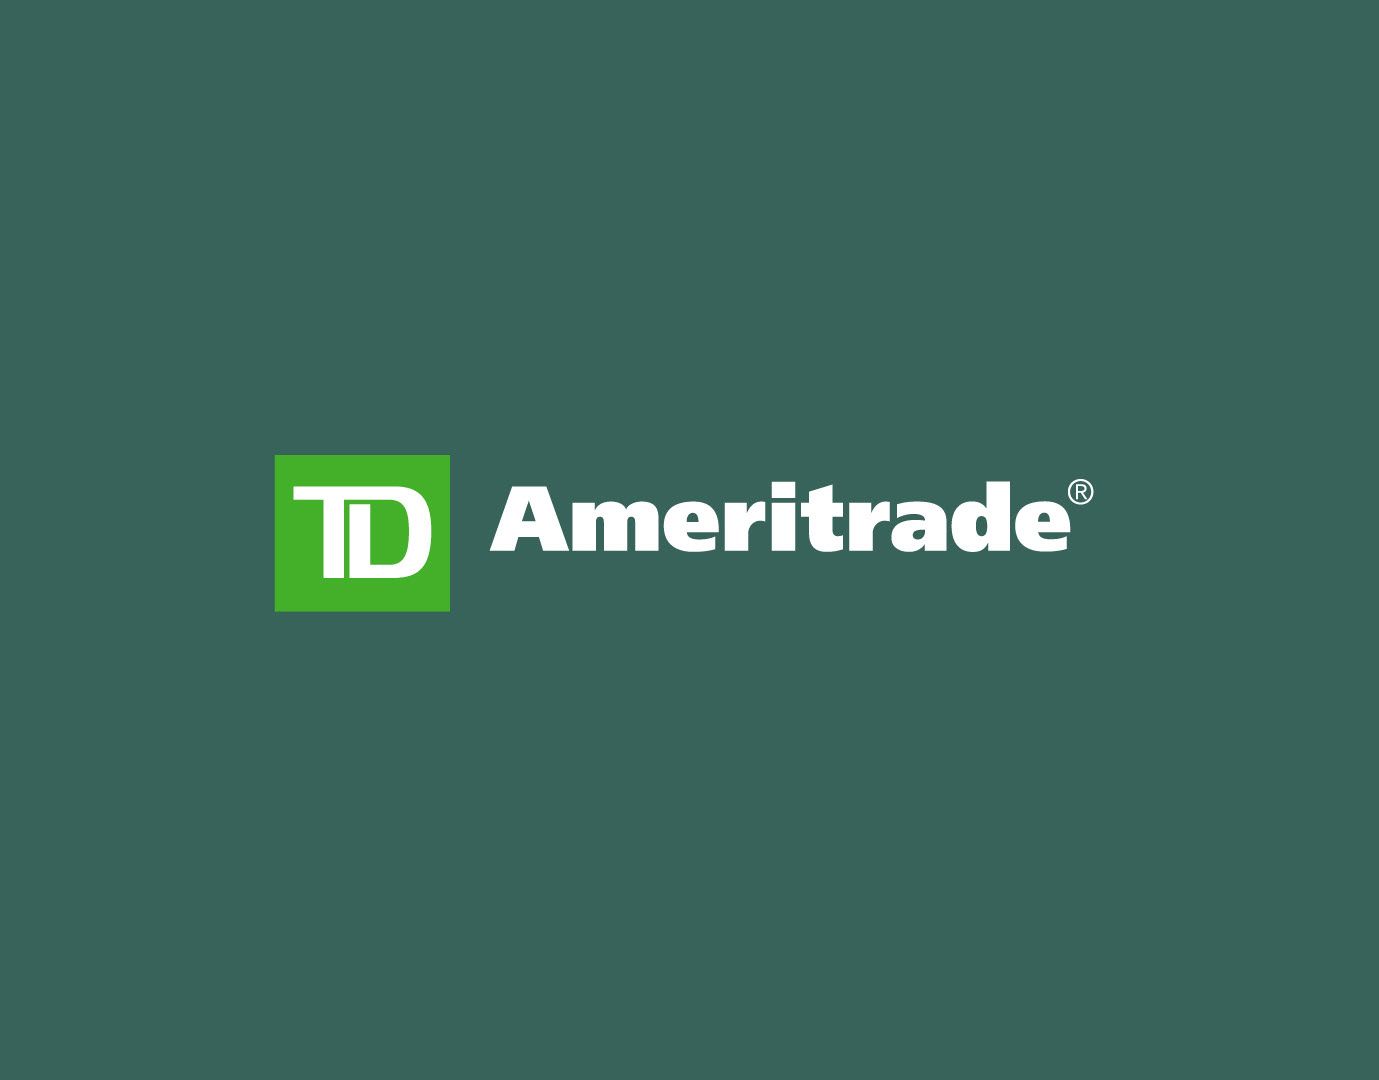 Ameritrade Logo - Brendan Roche - TD Ameritrade Logo Exploration